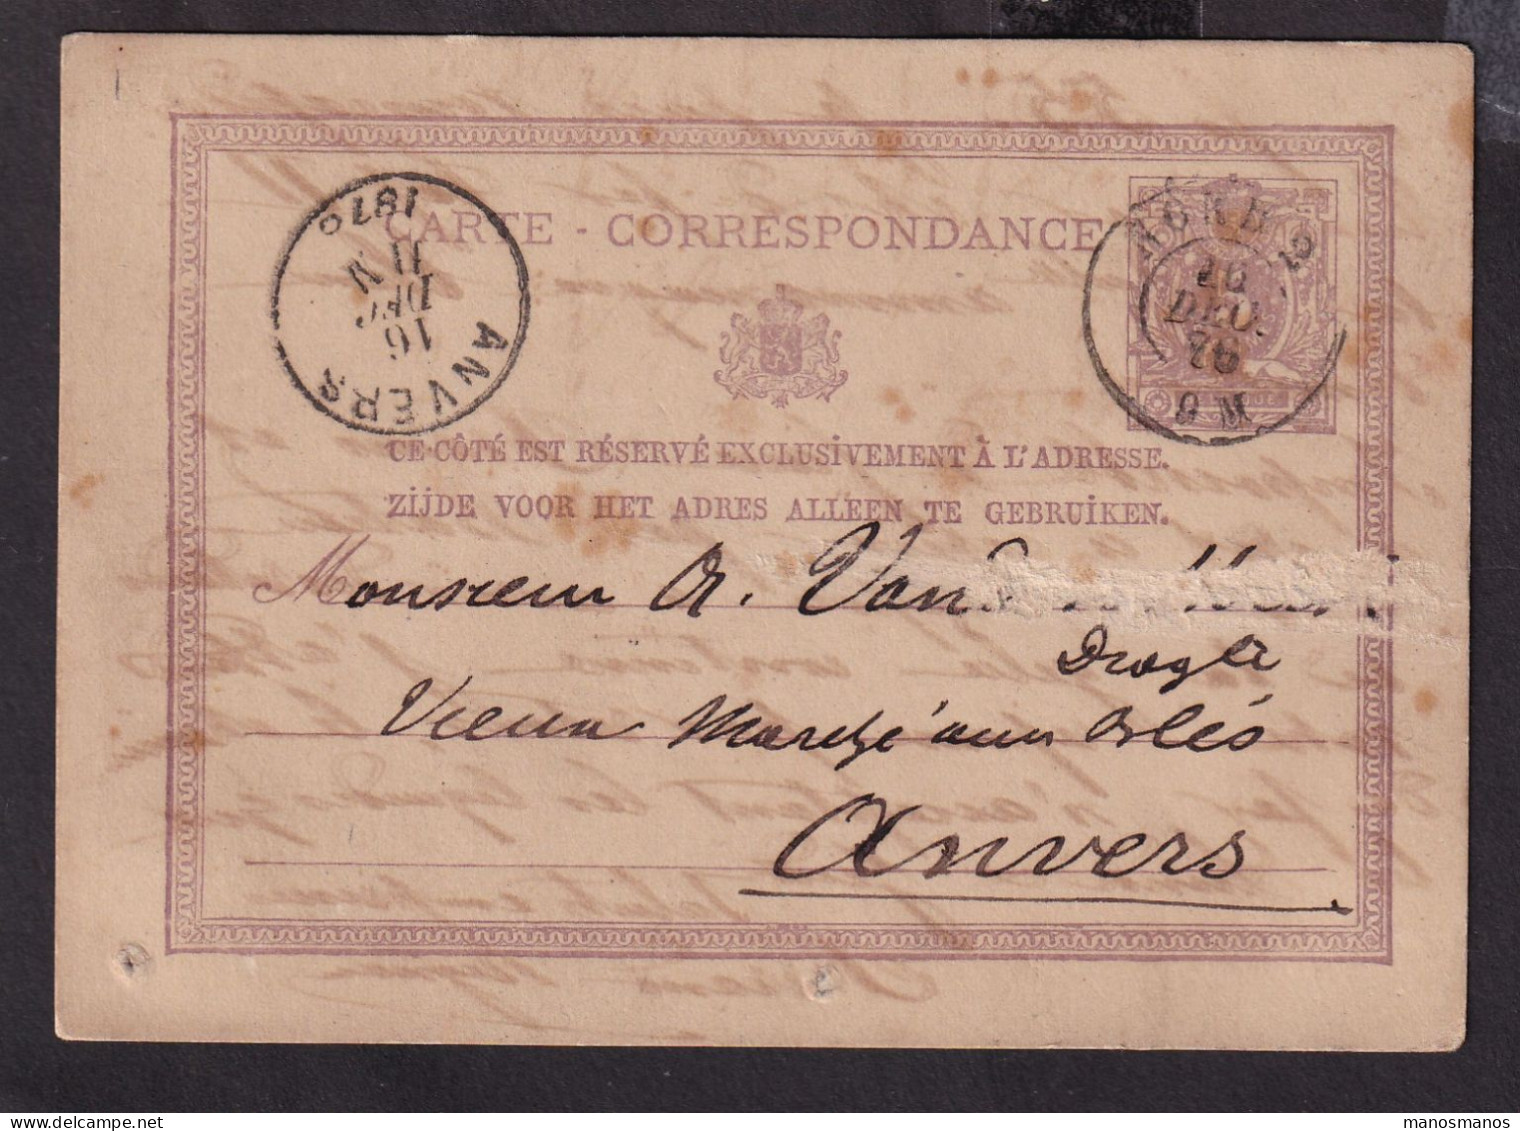 DDFF 183 --  Entier Postal Lion Couché Double Cercle AMBULANT NORD 2 1876 De BXL à ANVERS - Coba 30 EUR S/TP Détaché - Ambulantes